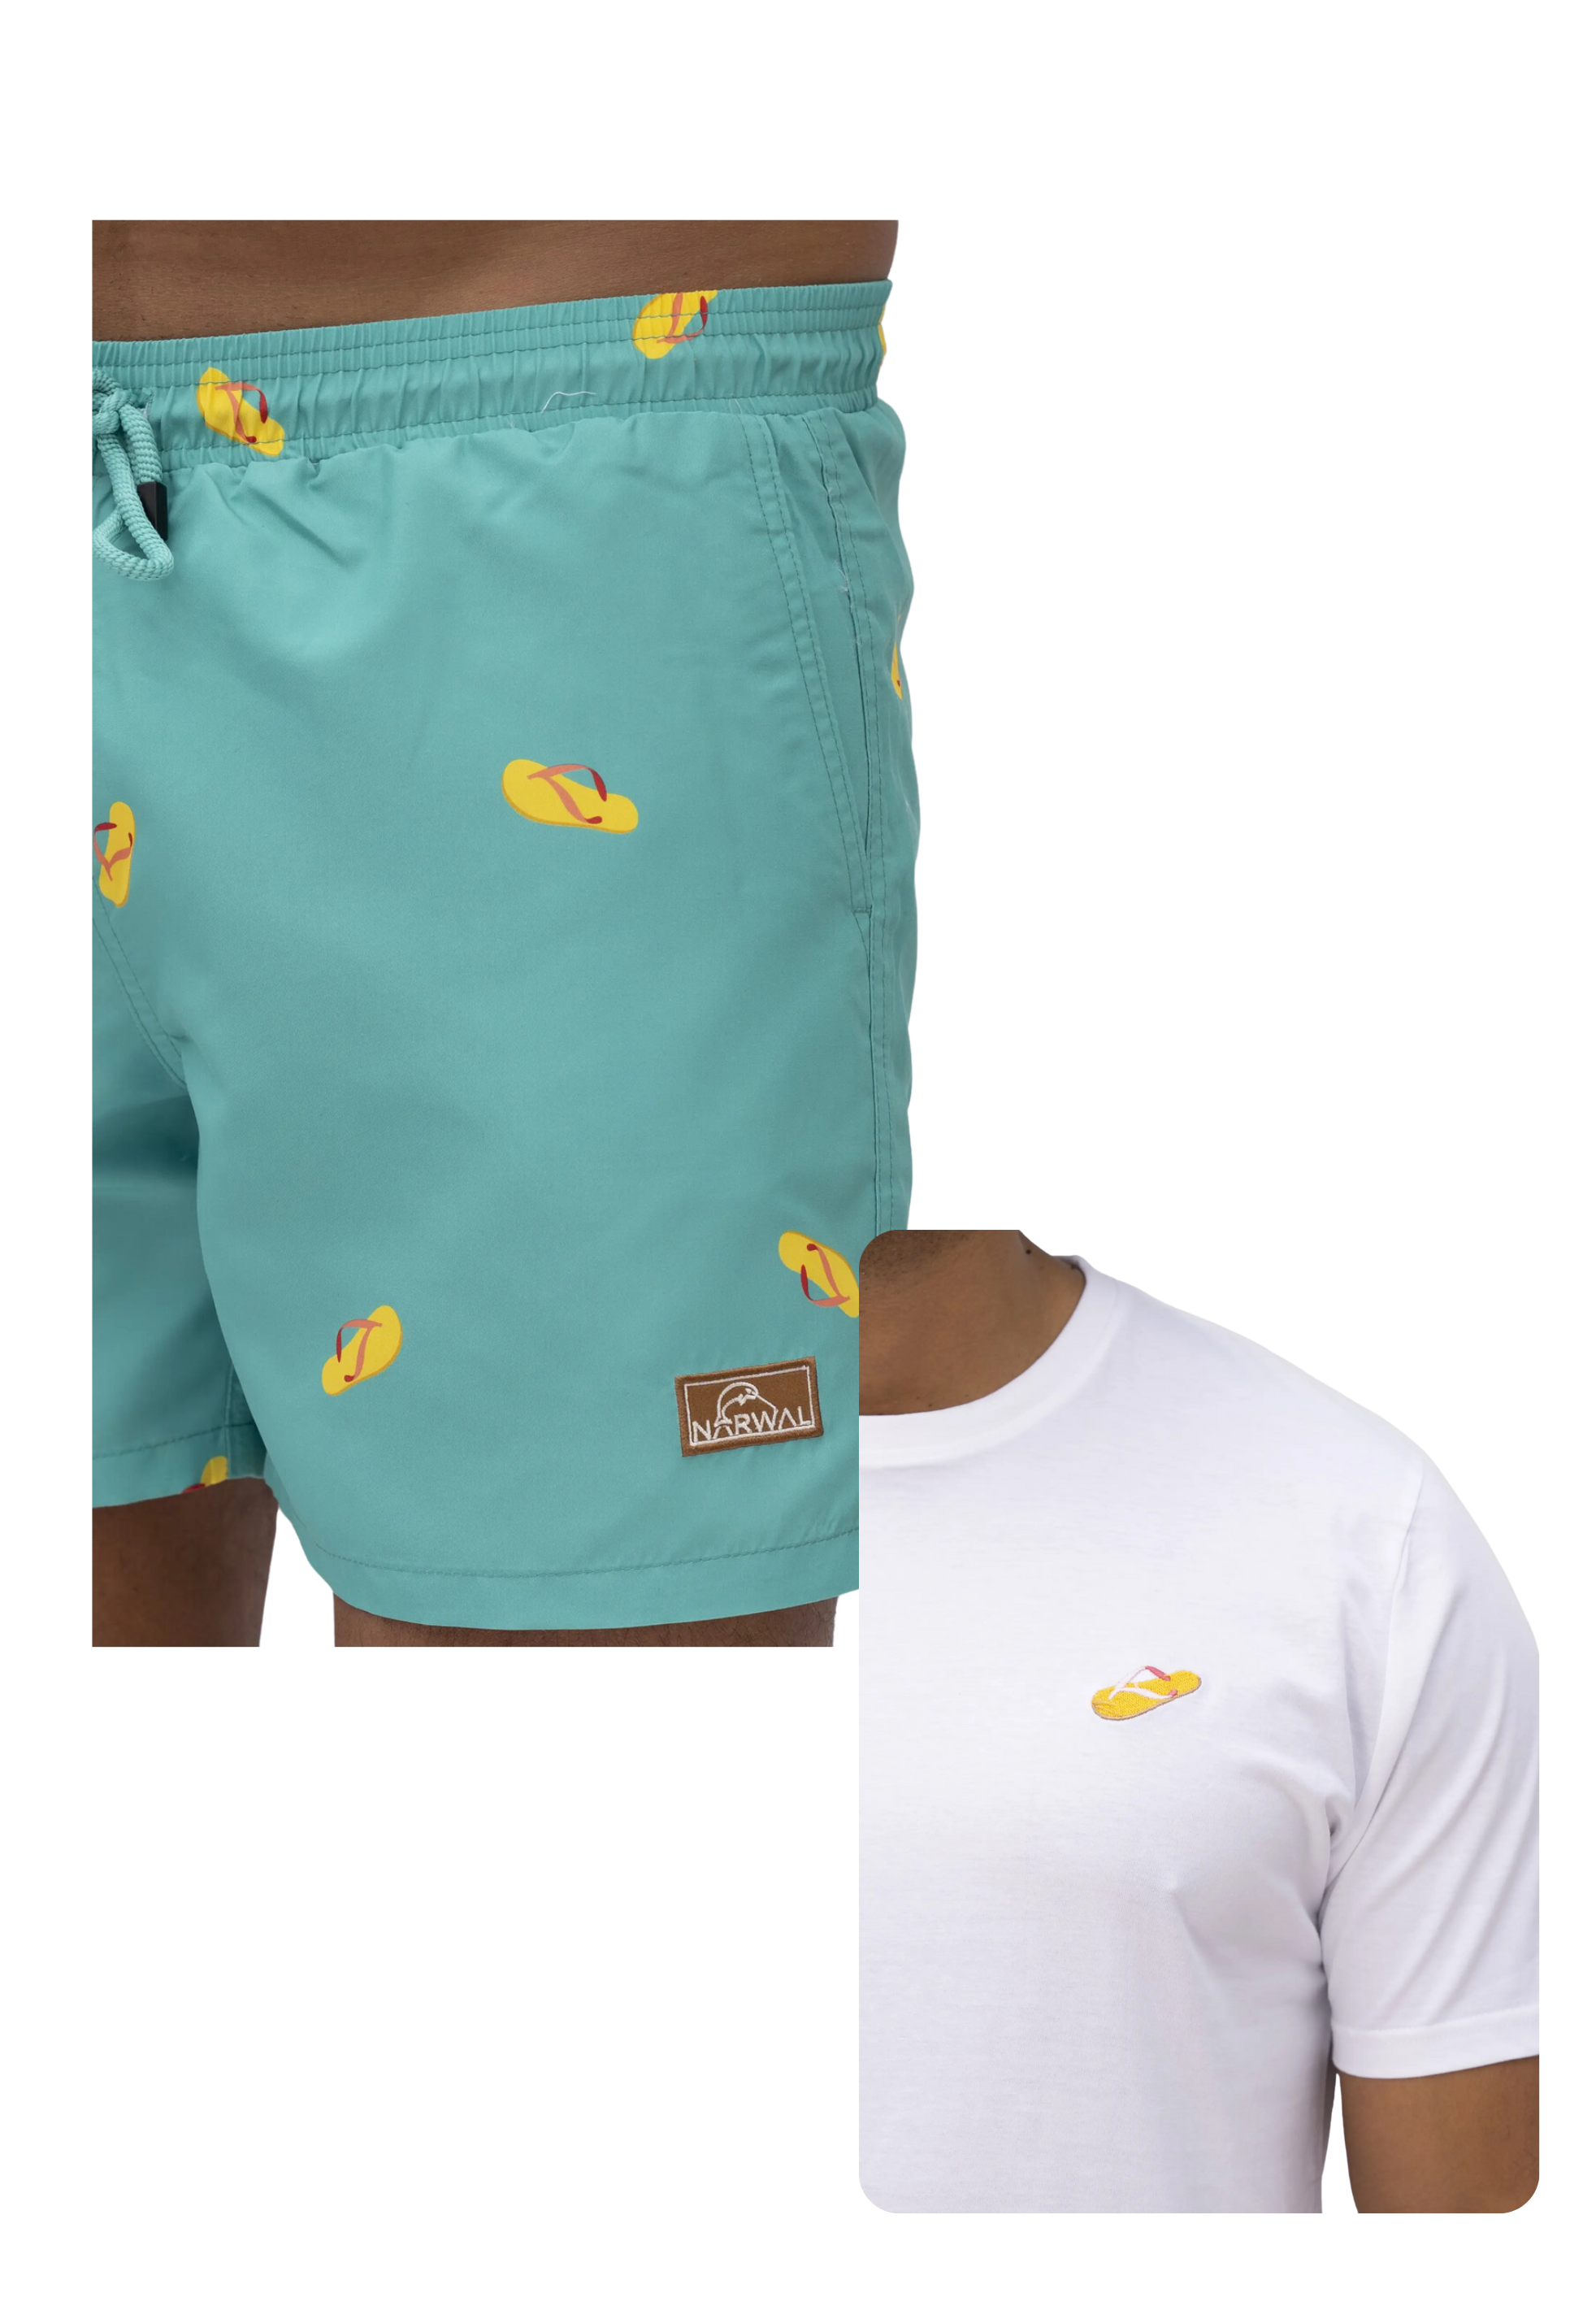 Flip-Flop Swim Trunks & T-shirt Bundle